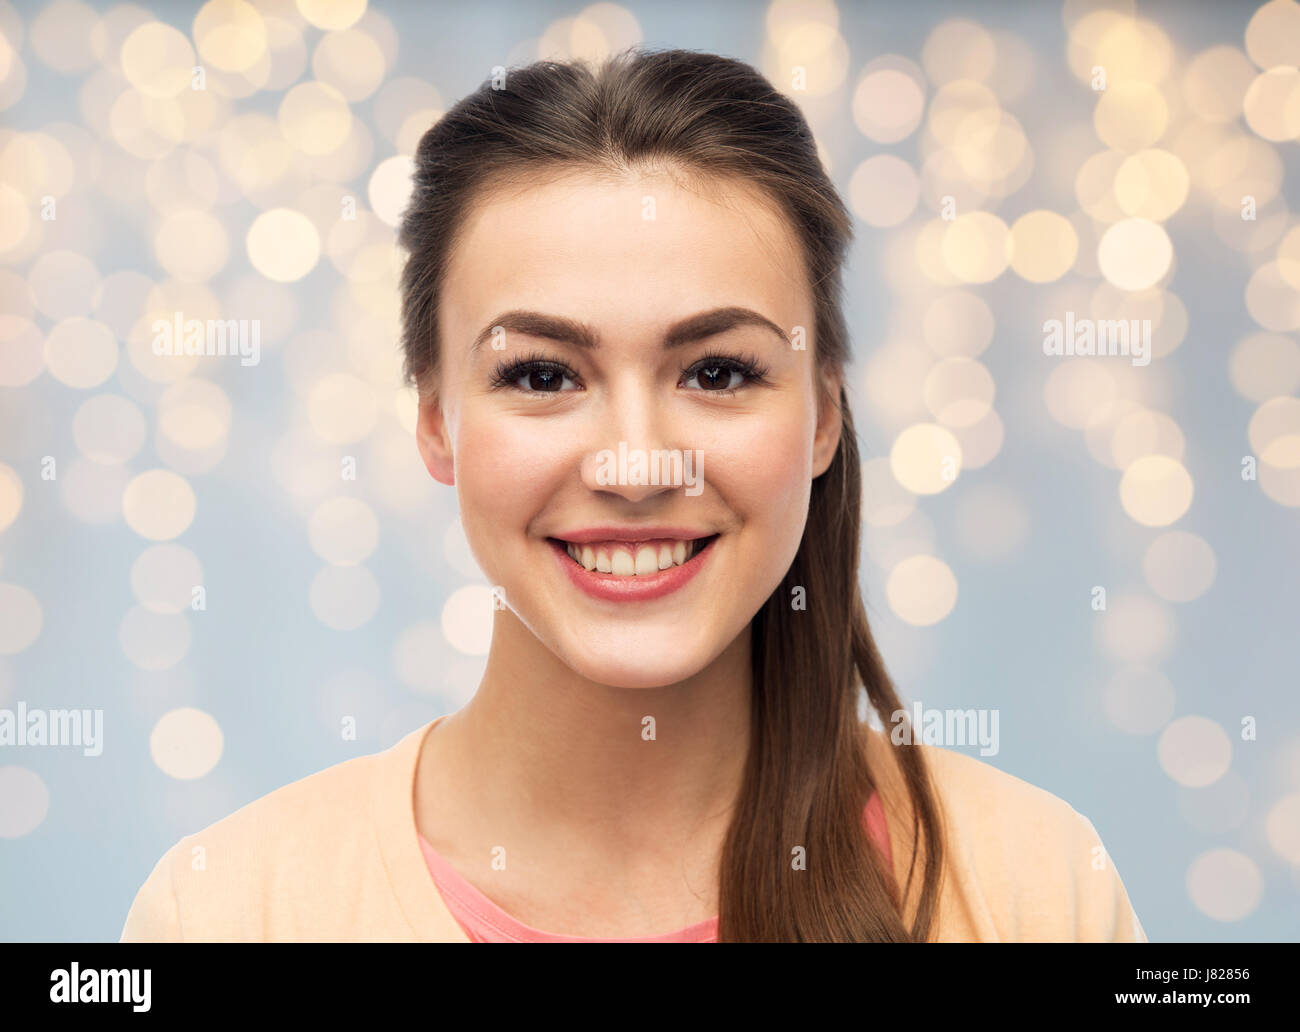 Visage de happy smiling young woman Banque D'Images